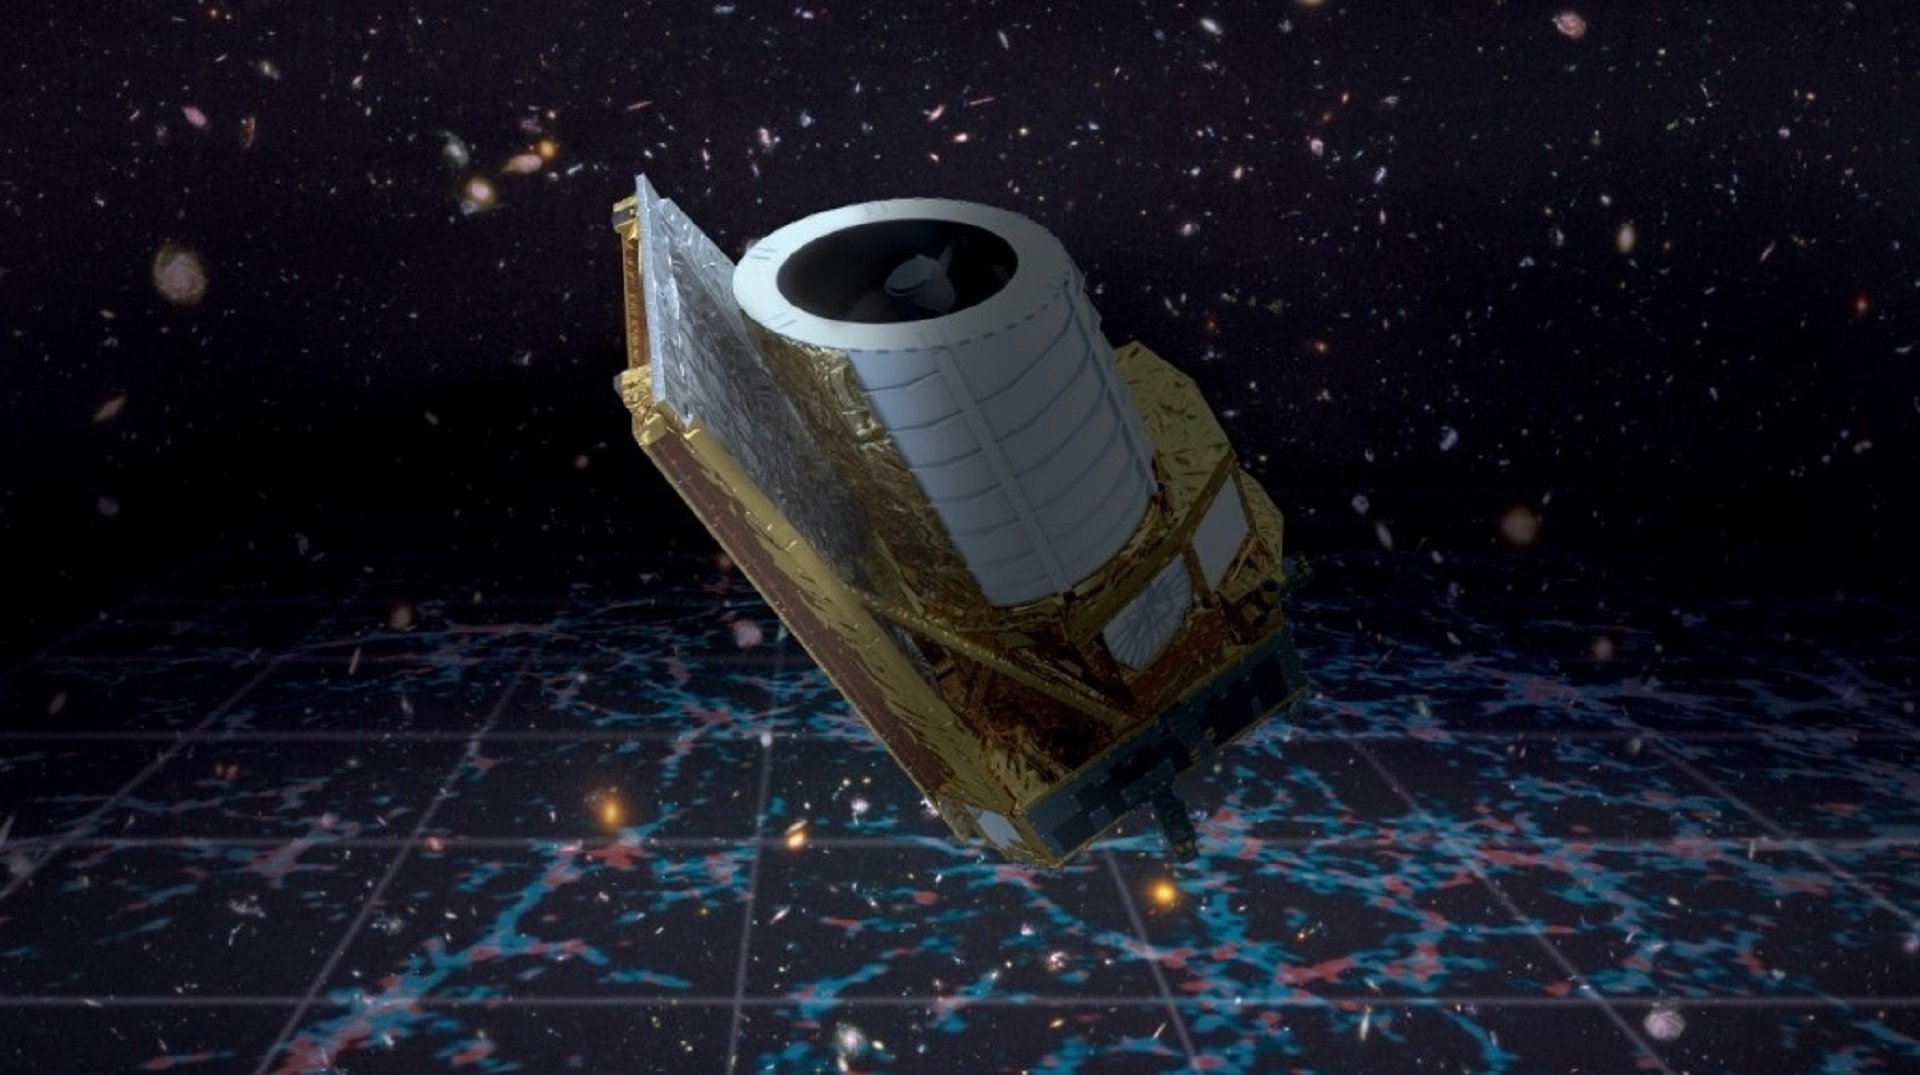 Europa lanza el telescopio espacial Euclid para crear el mapa más grande en 3D del universo